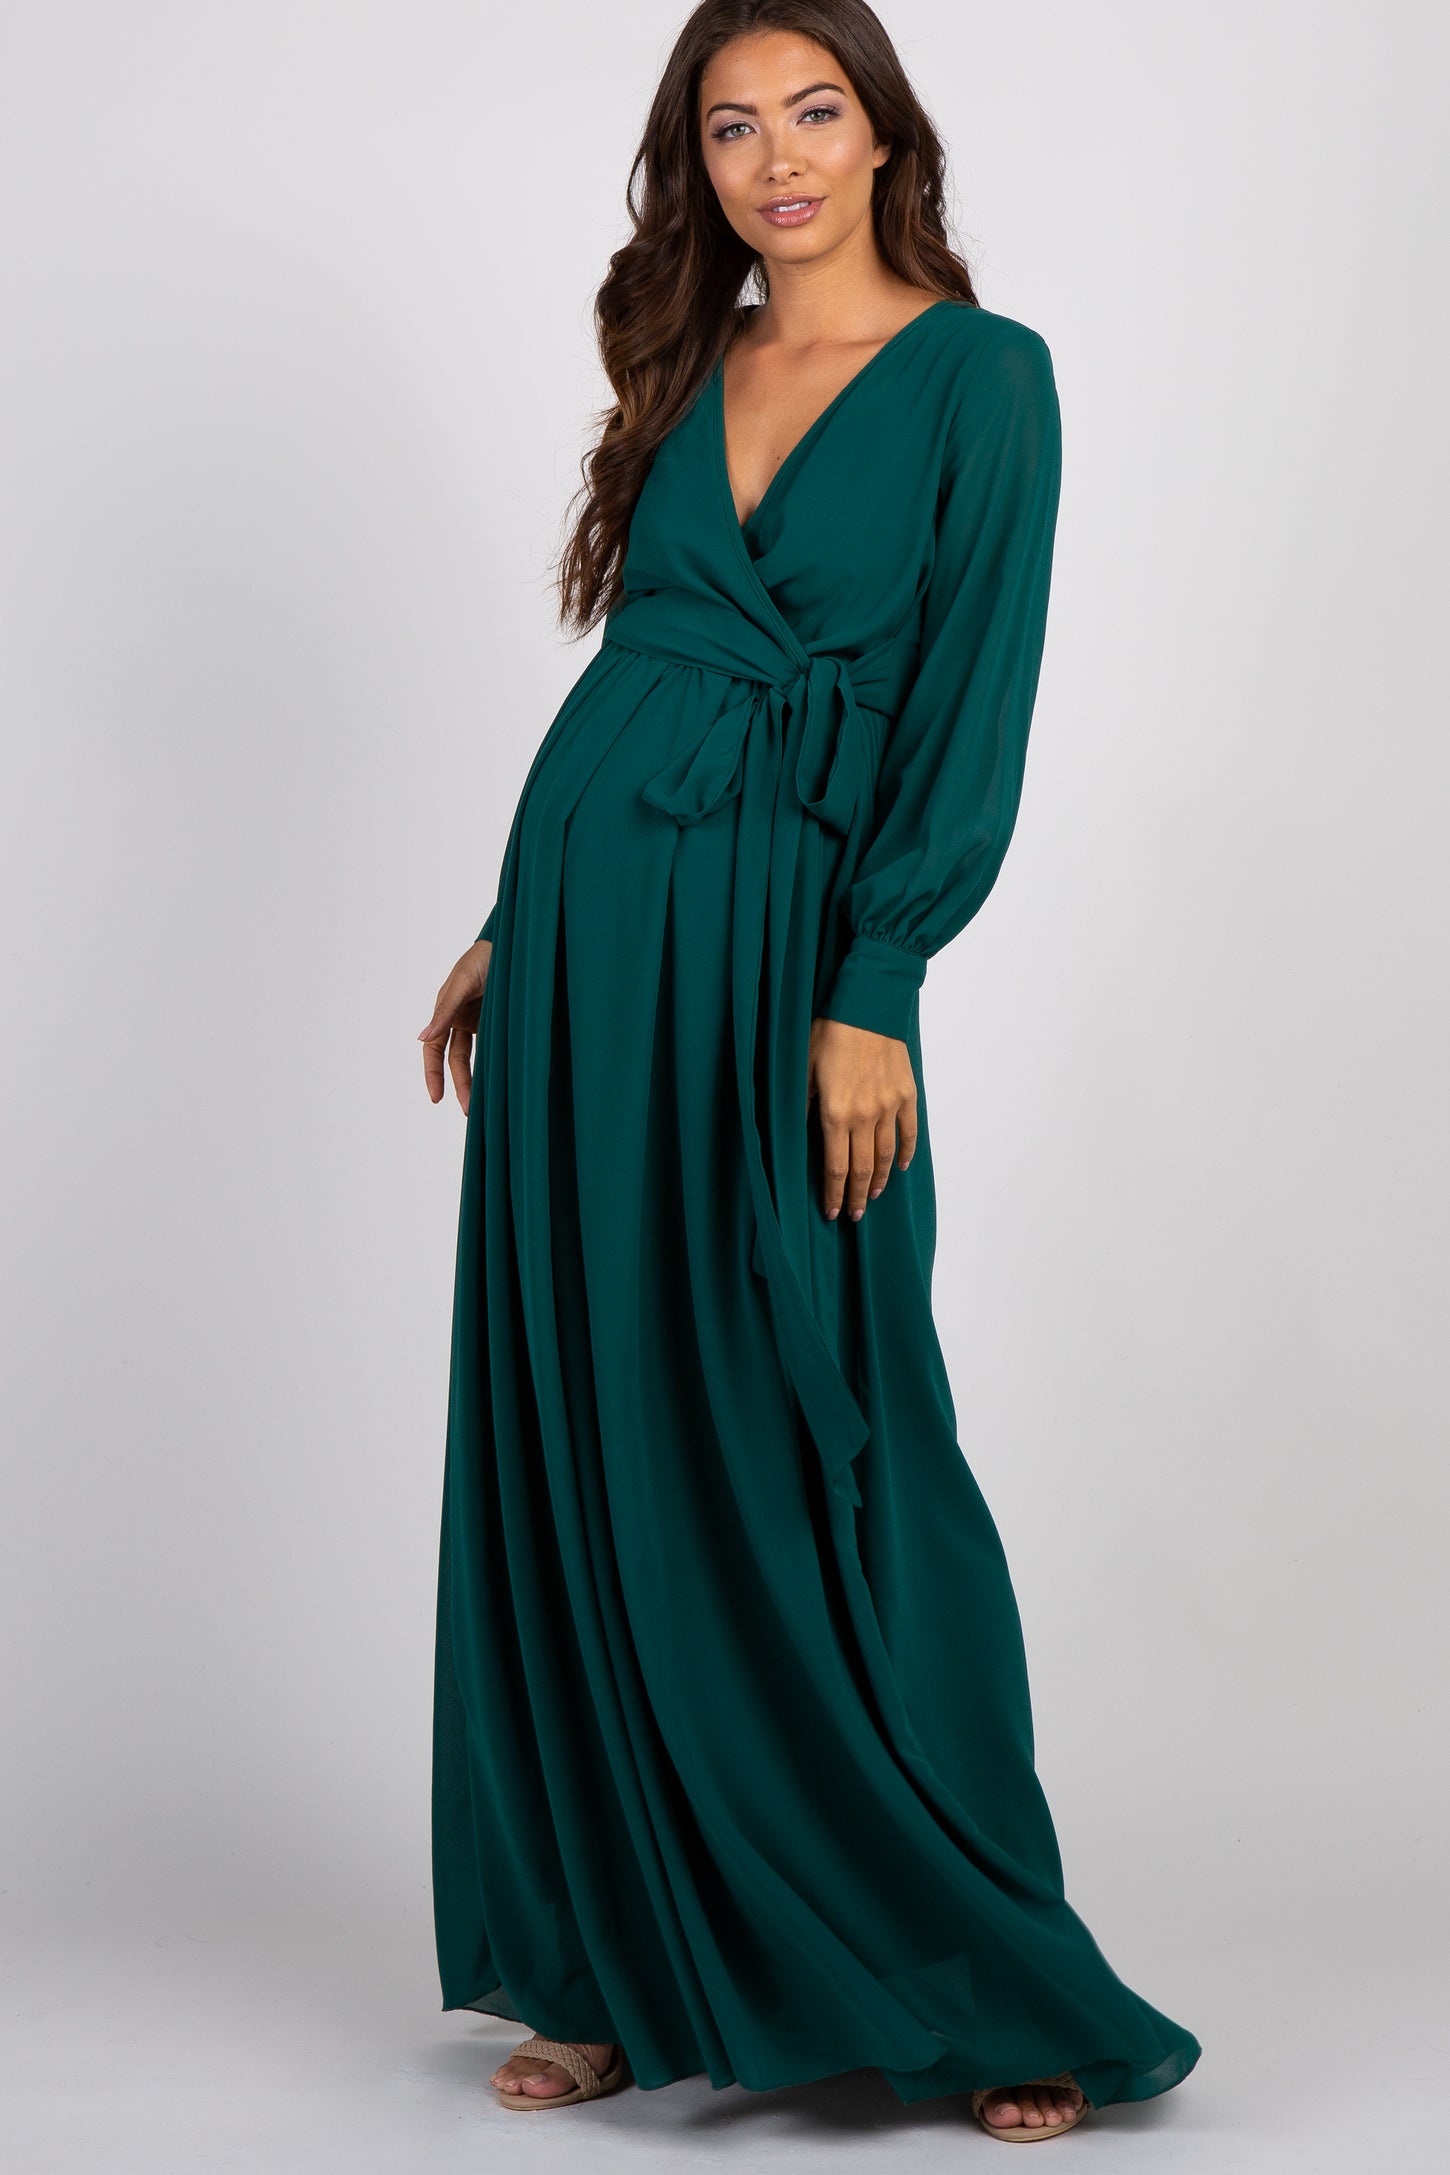 Green Chiffon Long Sleeve Pleated Maternity Maxi Dress– PinkBlush